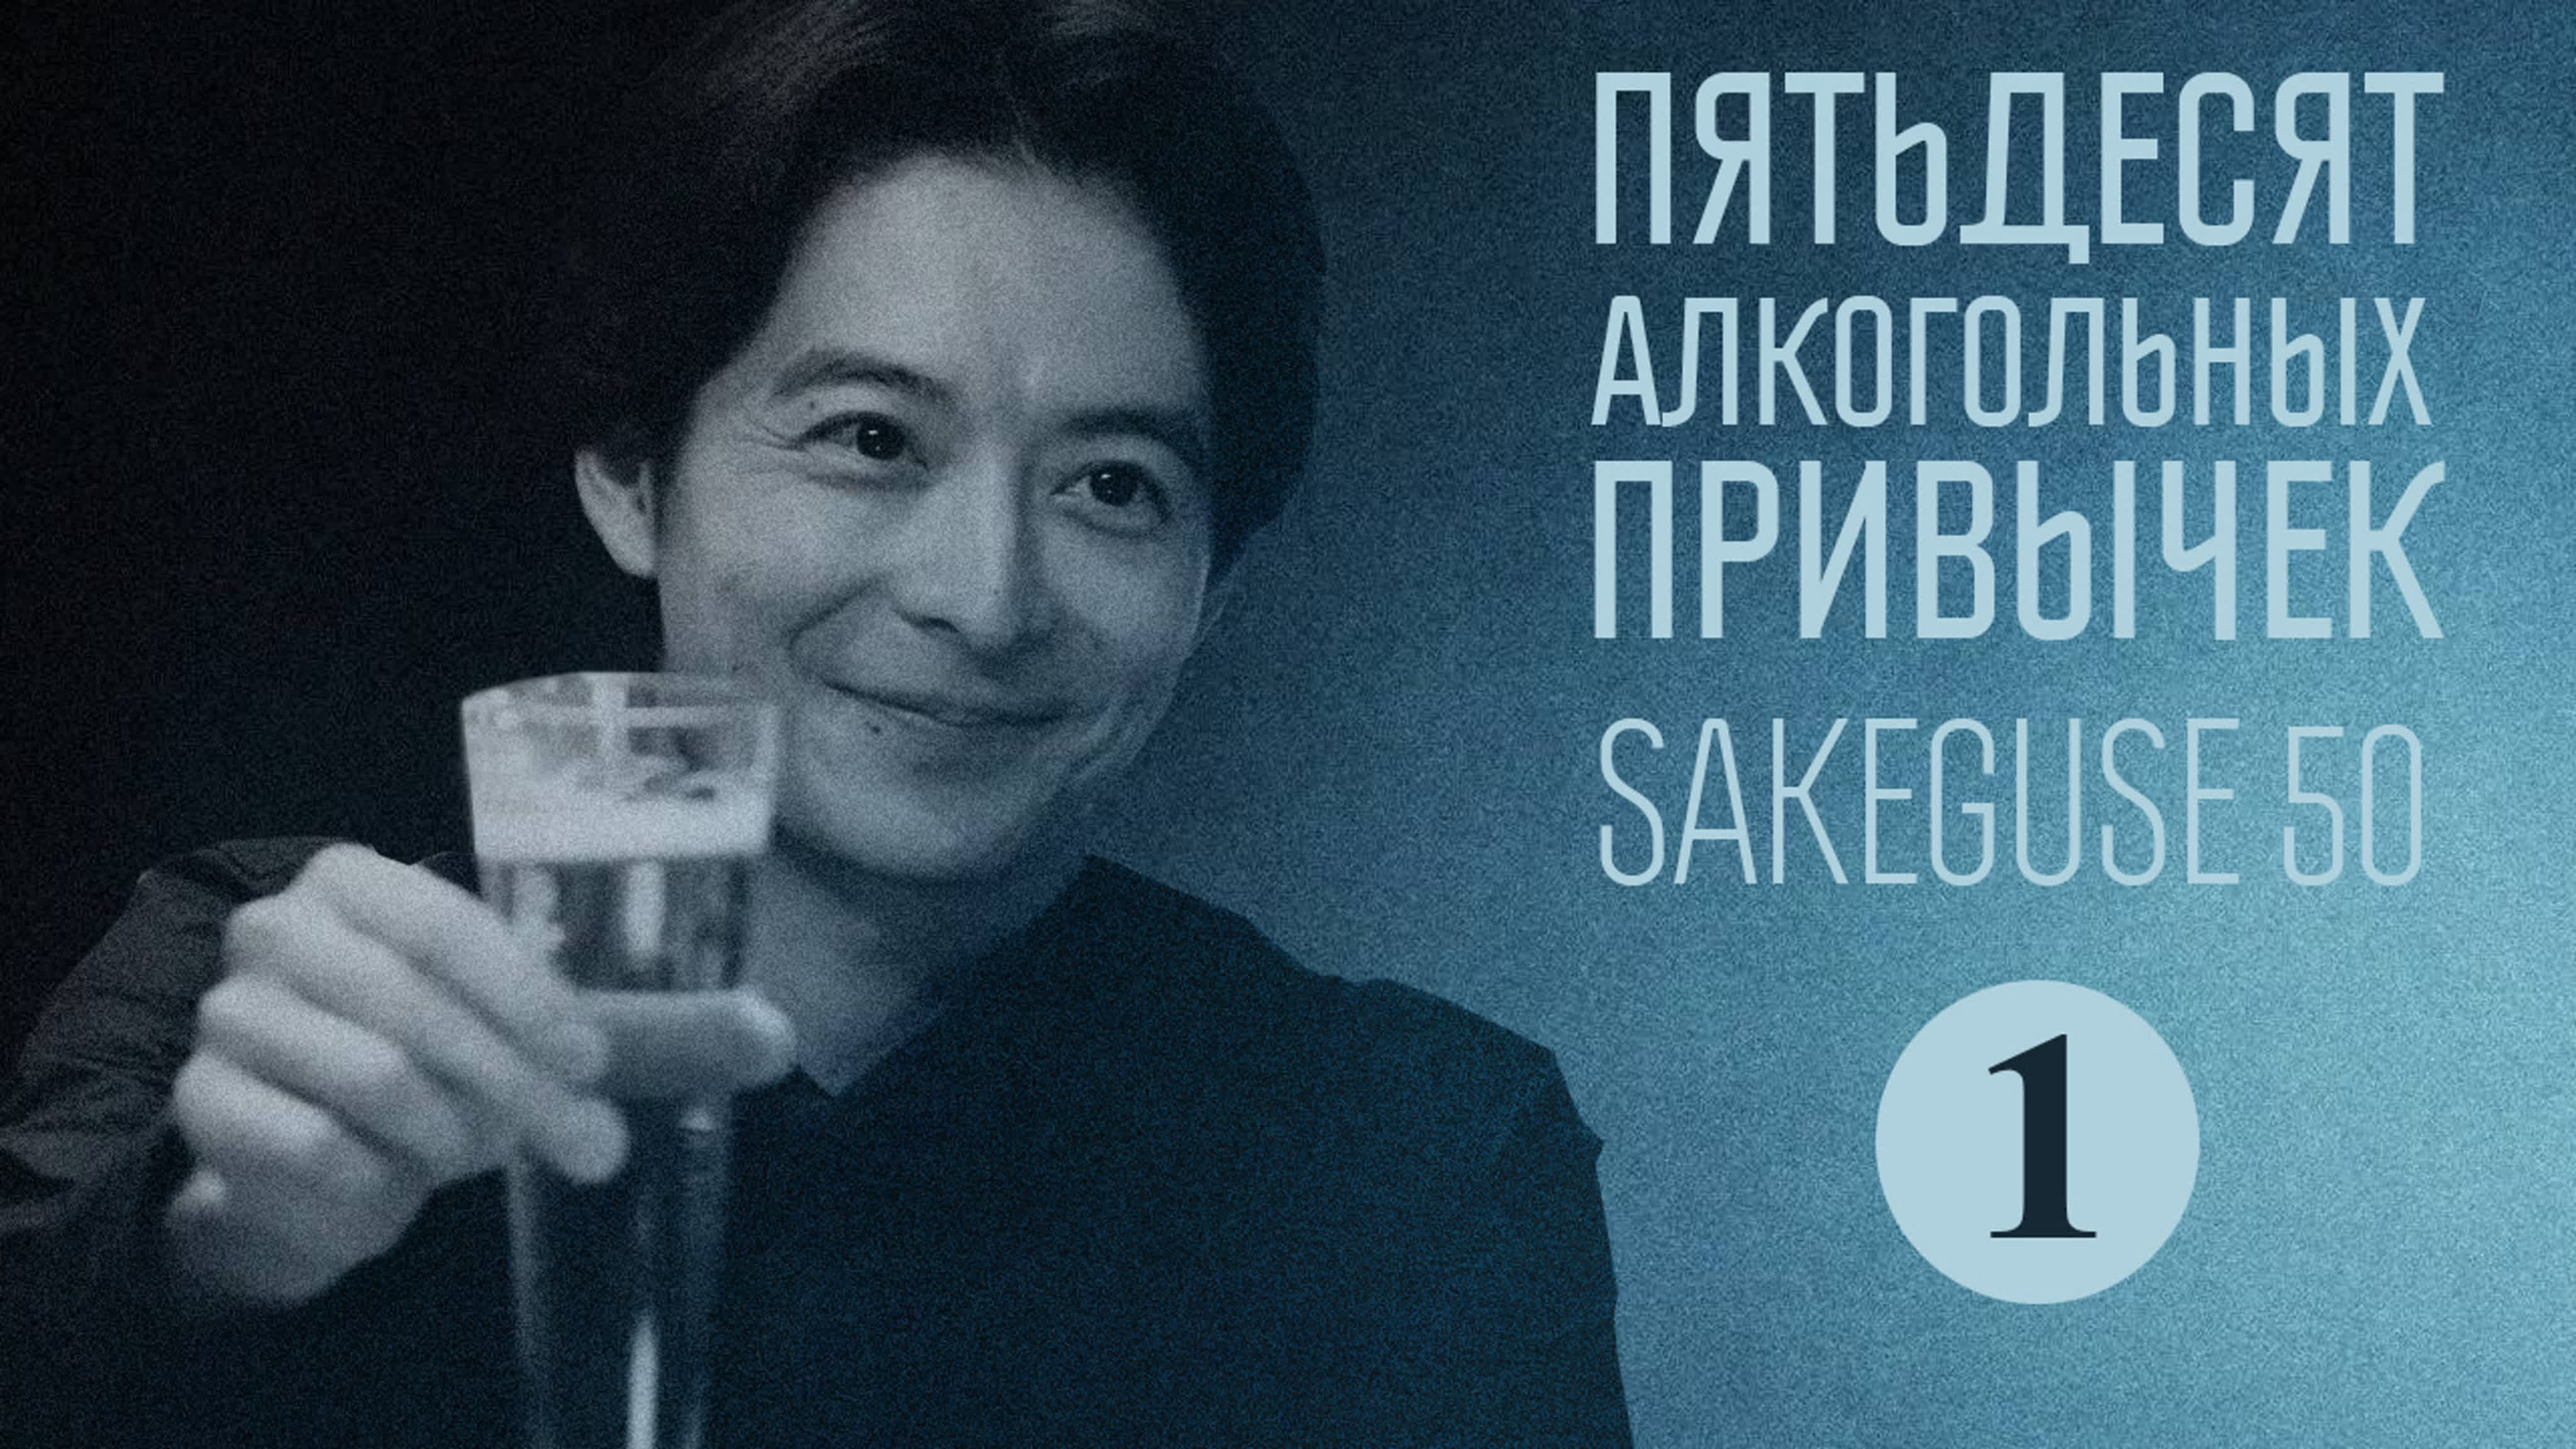 Пятьдесят алкогольных привычек / Sakeguse 50 (2021)